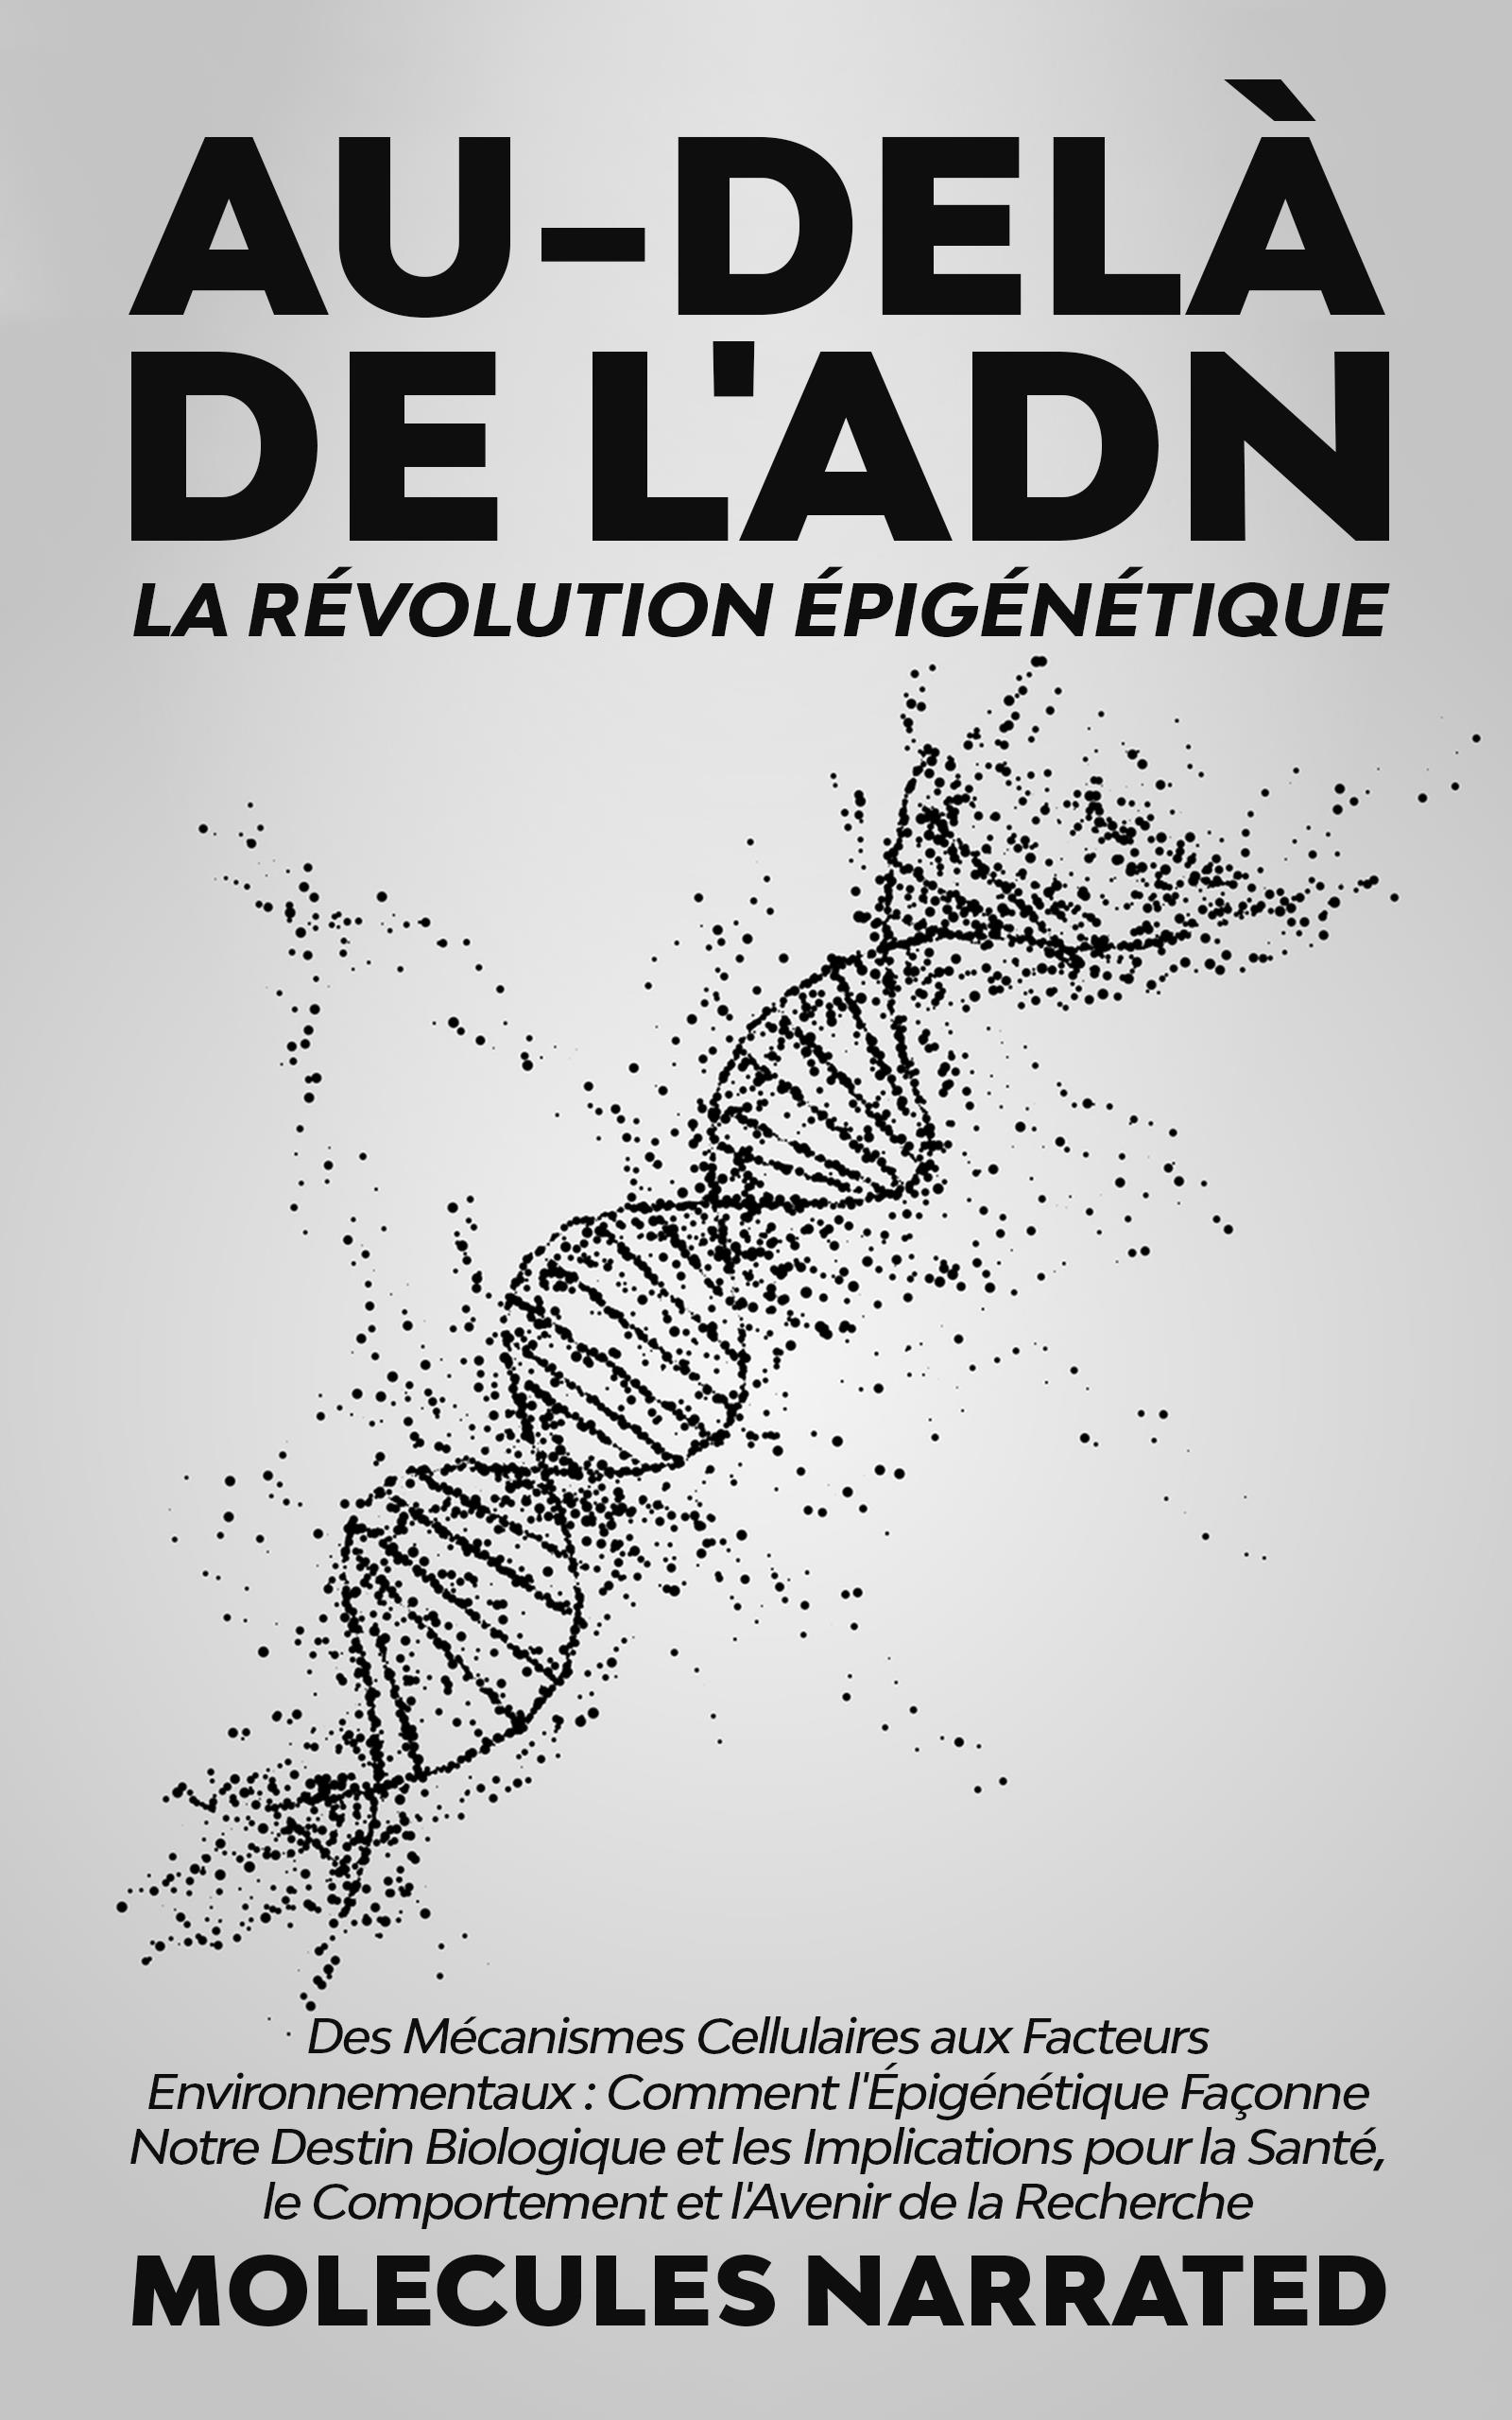 Au-delà de l'ADN: La Révolution Épigénétique